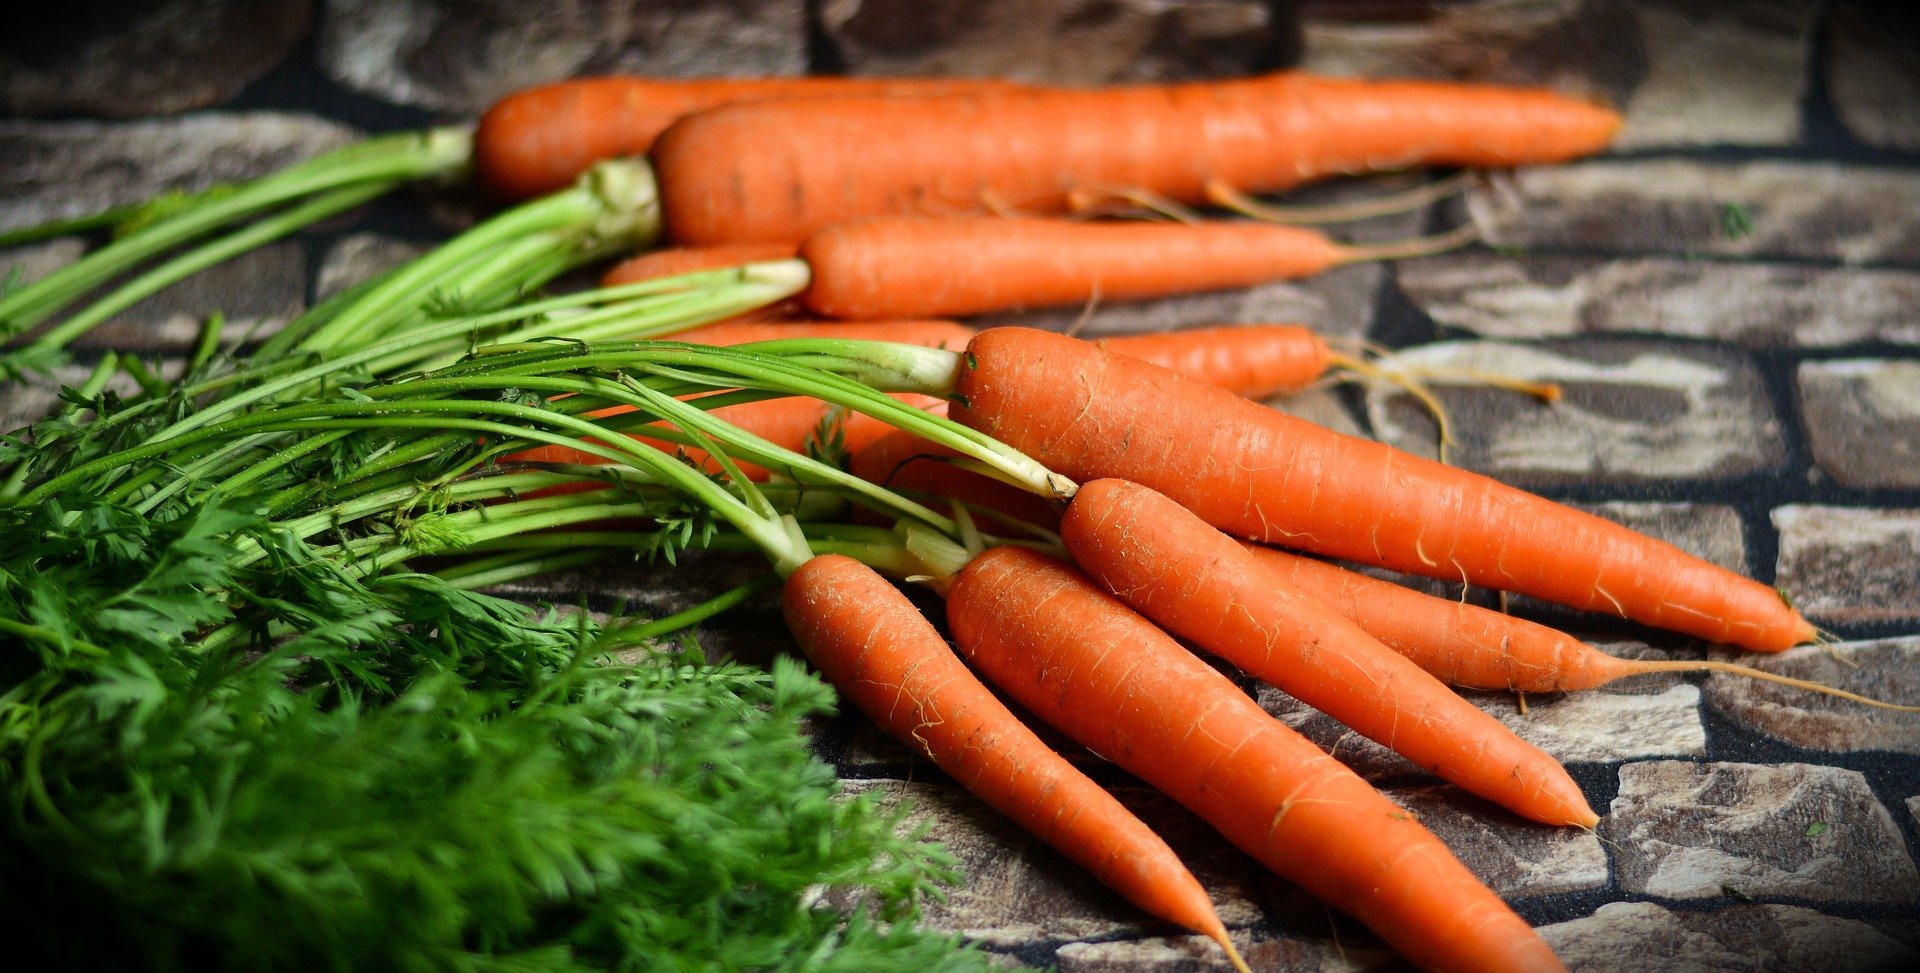 quiz z hiszpańskiego warzywa verdura test wiedzy łatwy marchewka zanahoria